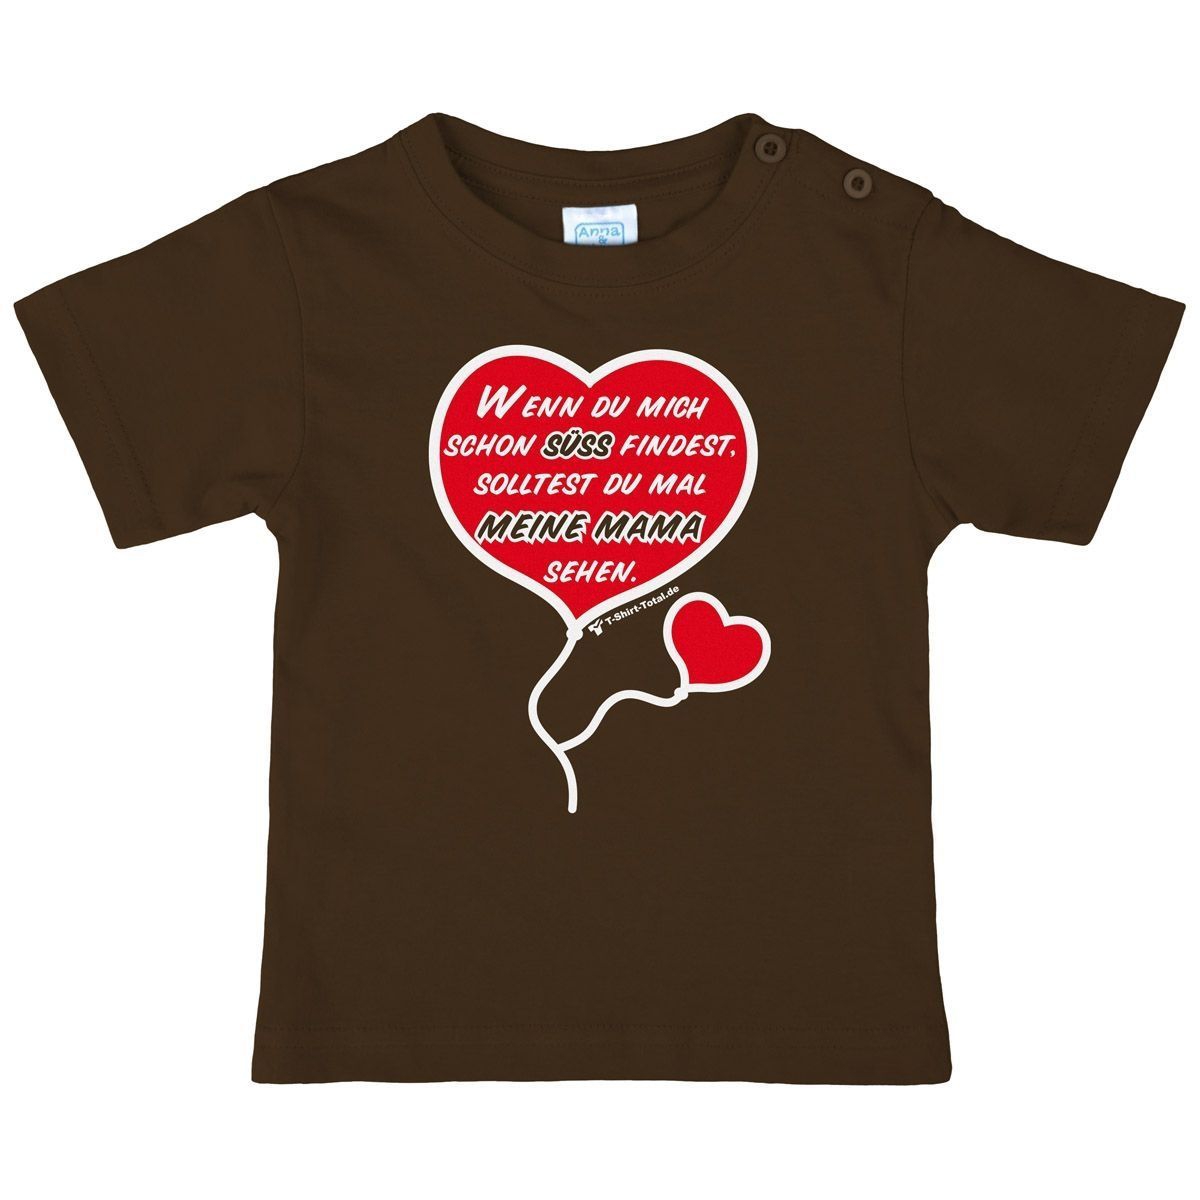 Süß finden Kinder T-Shirt braun 98